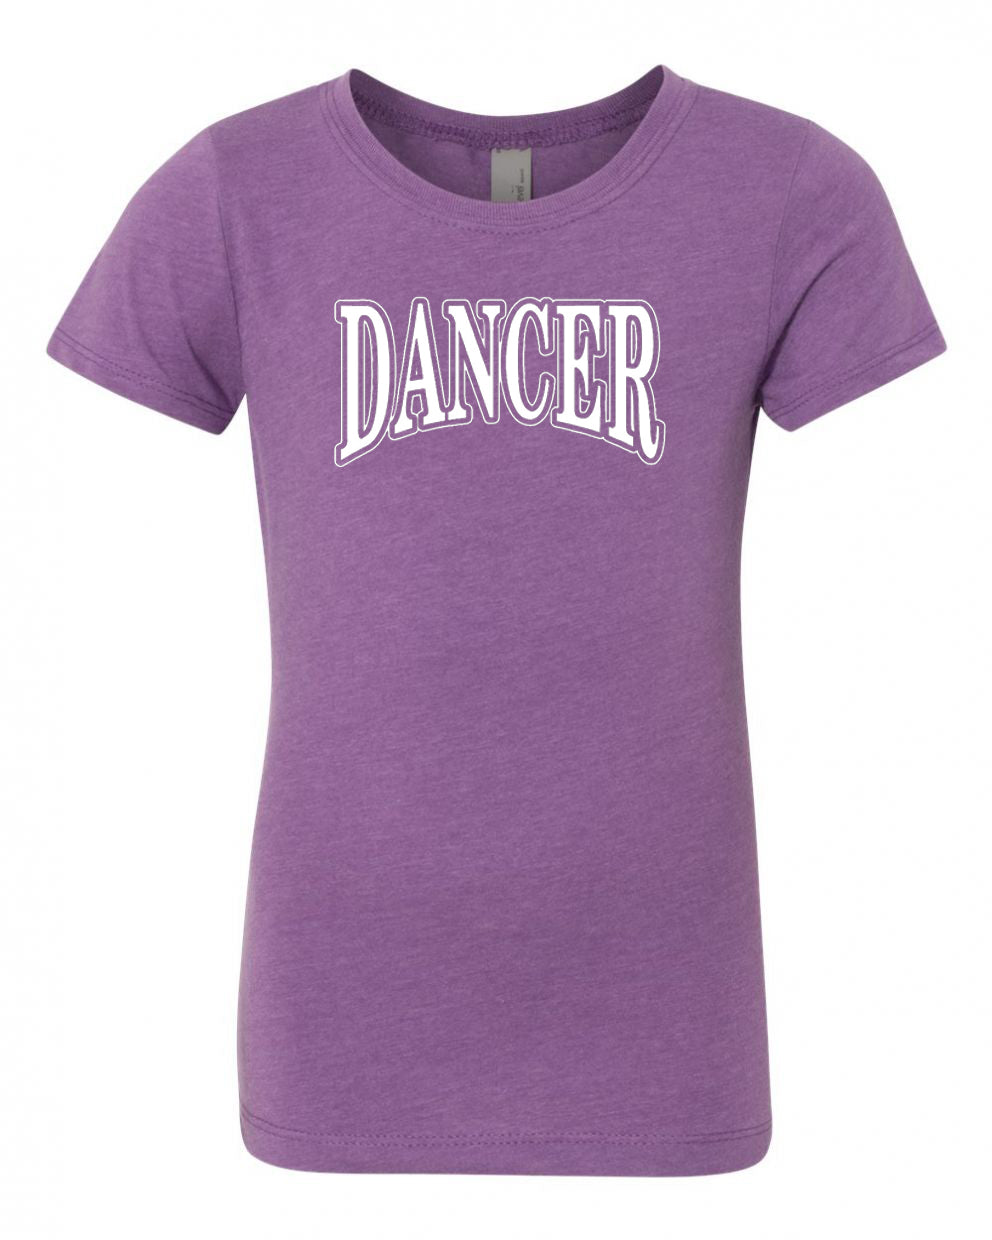 Dancer Girls T-Shirt